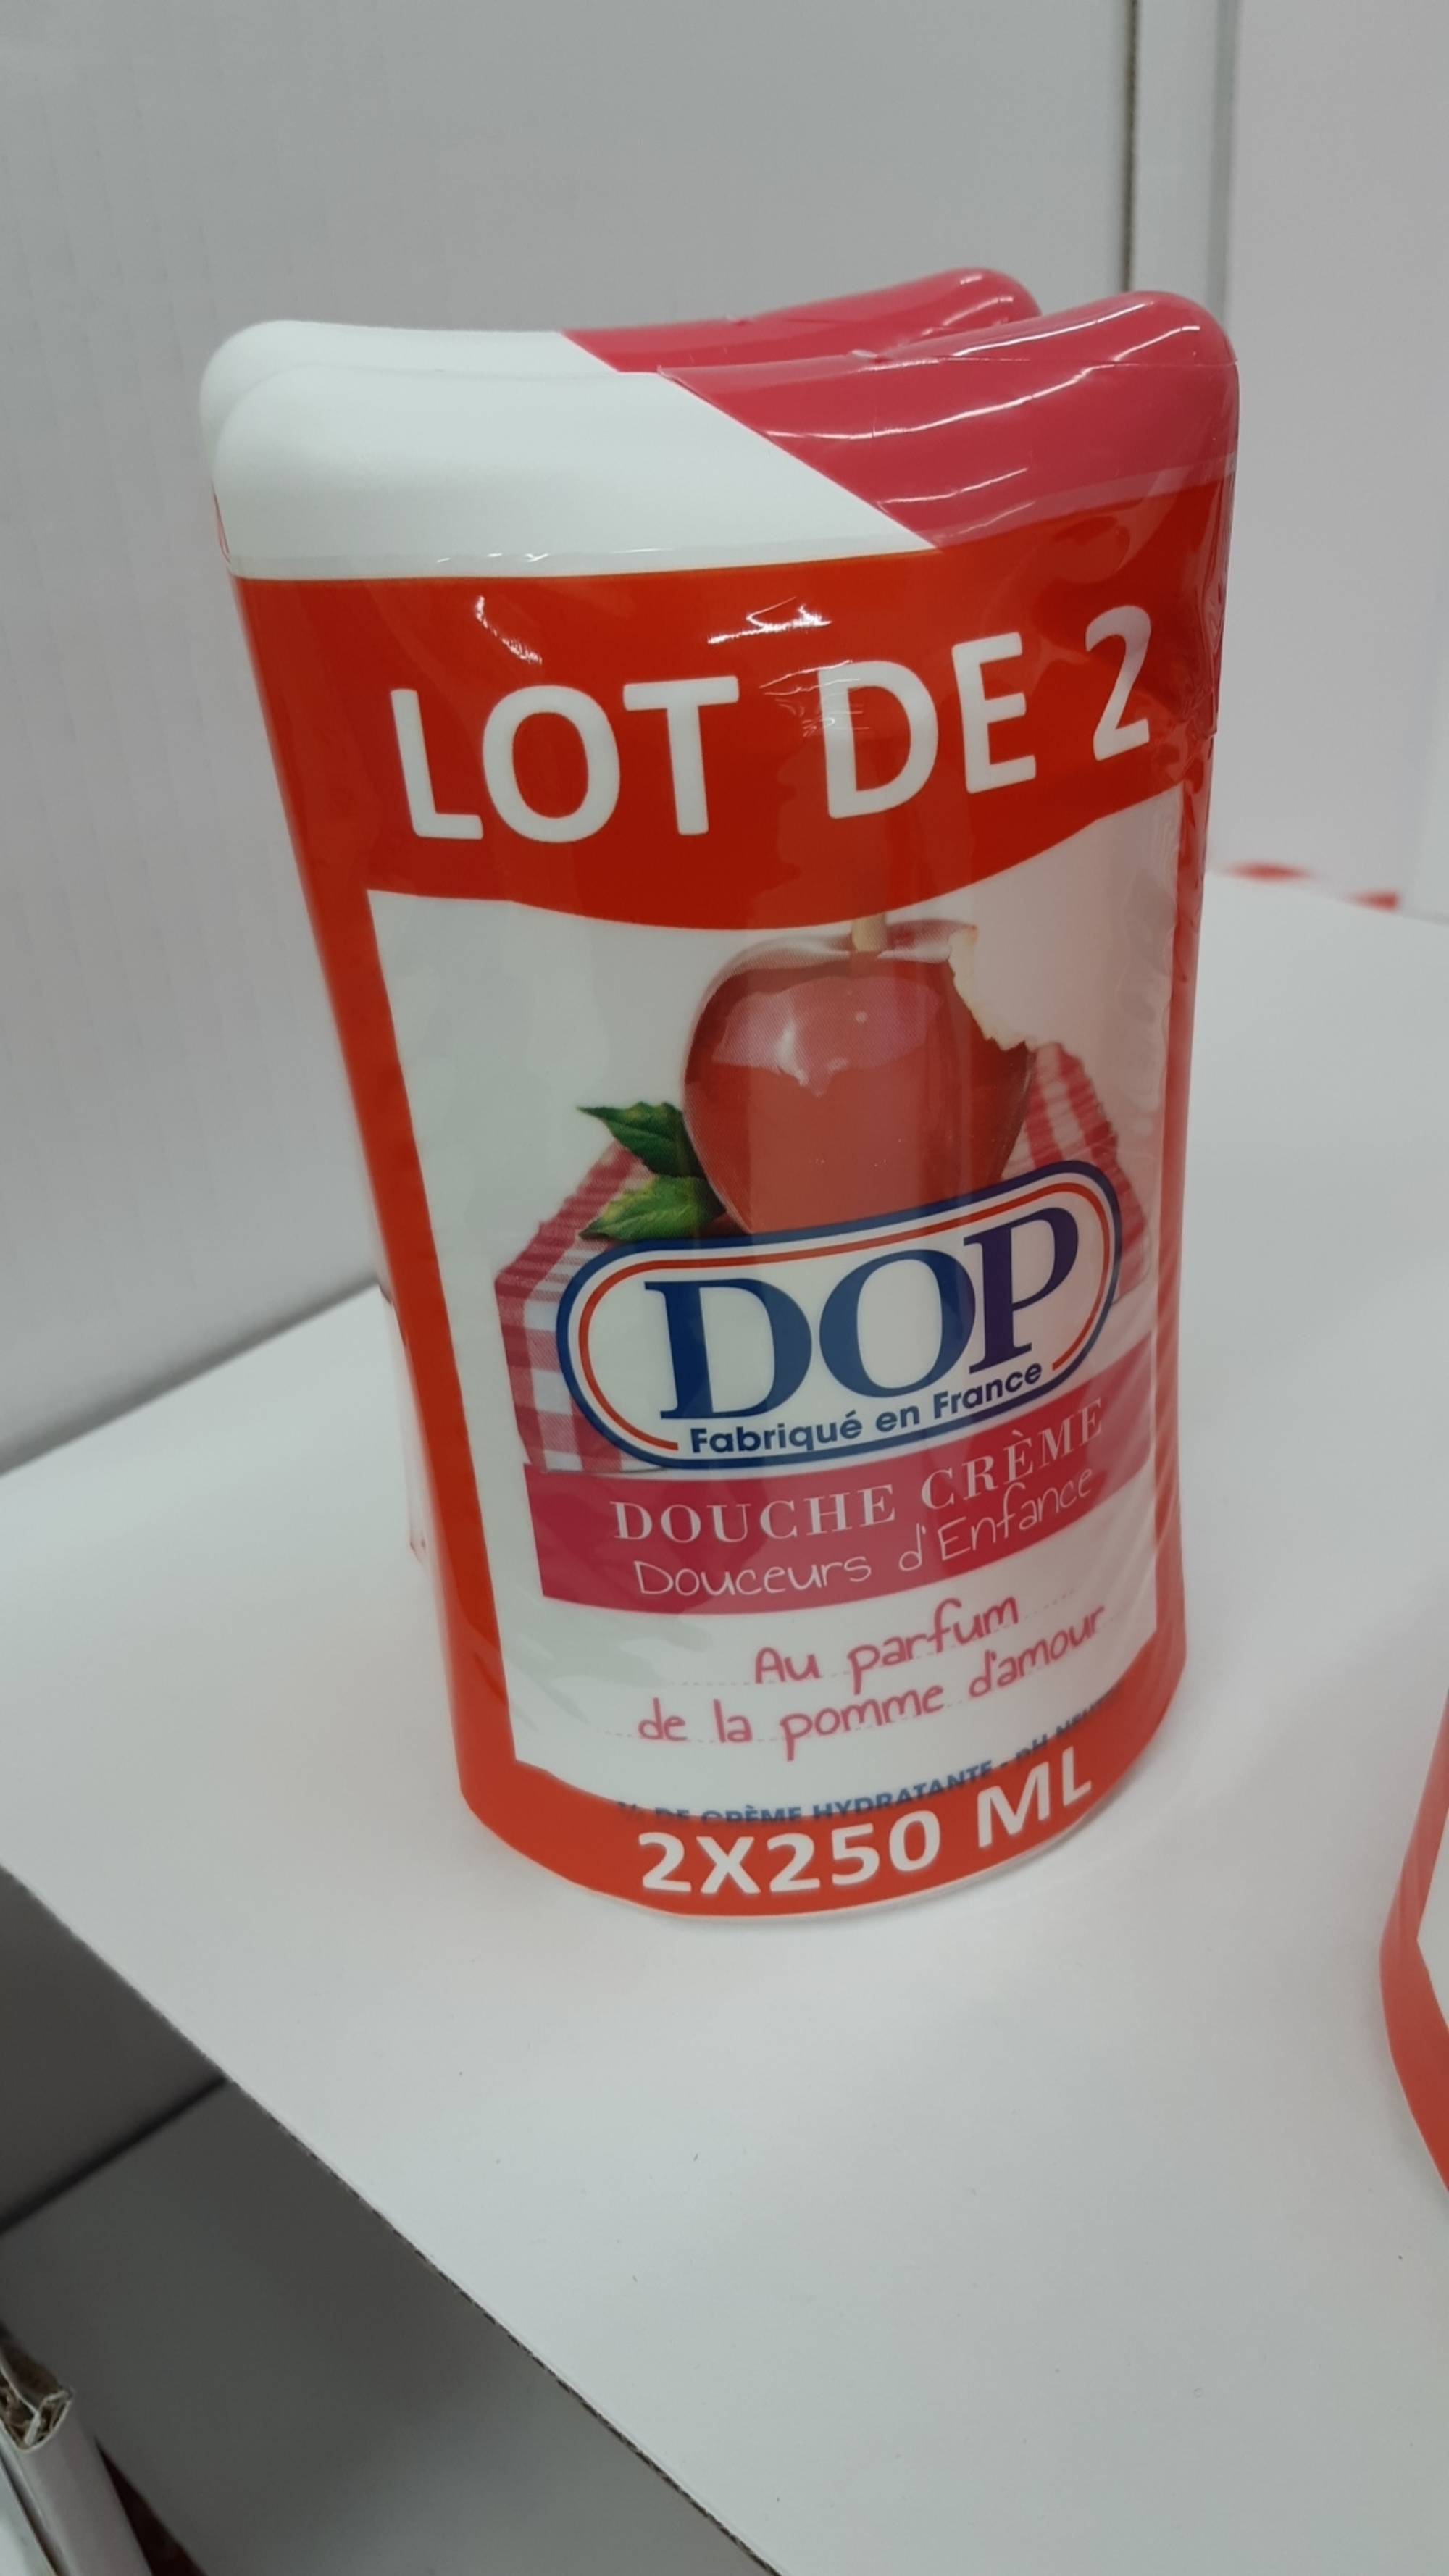 DOP - Douche crème au parfum de la Pomme d'amour